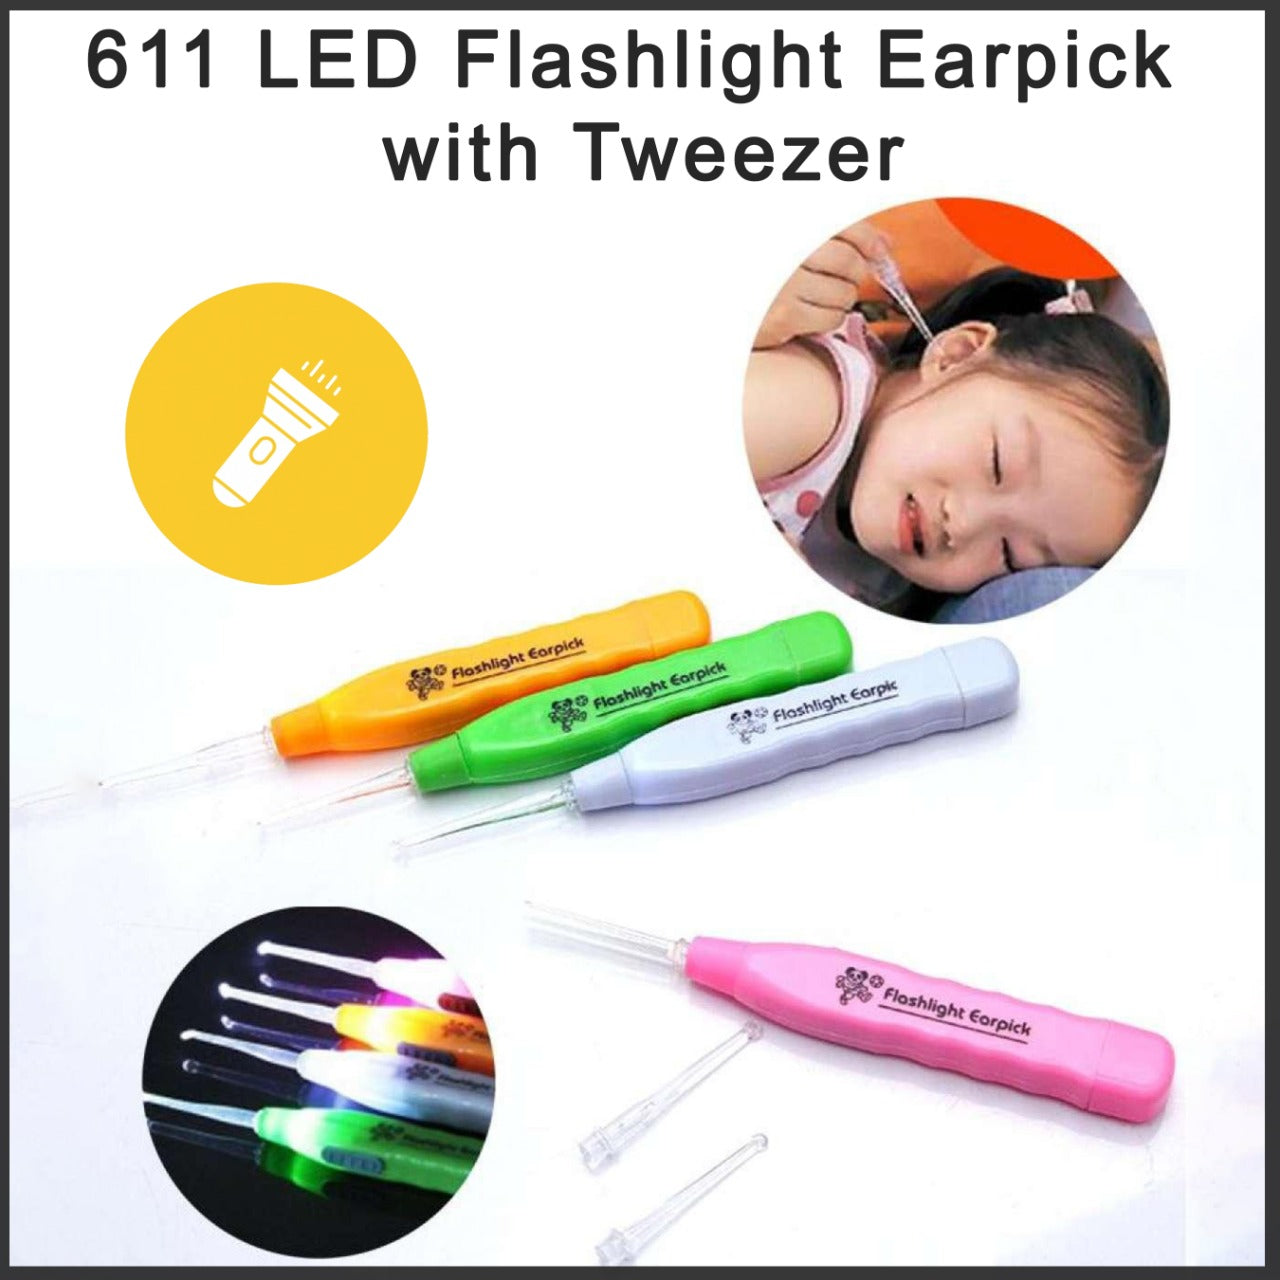 0611 LED Flashlight Earpick with Tweezer - China, 0.06 kgs